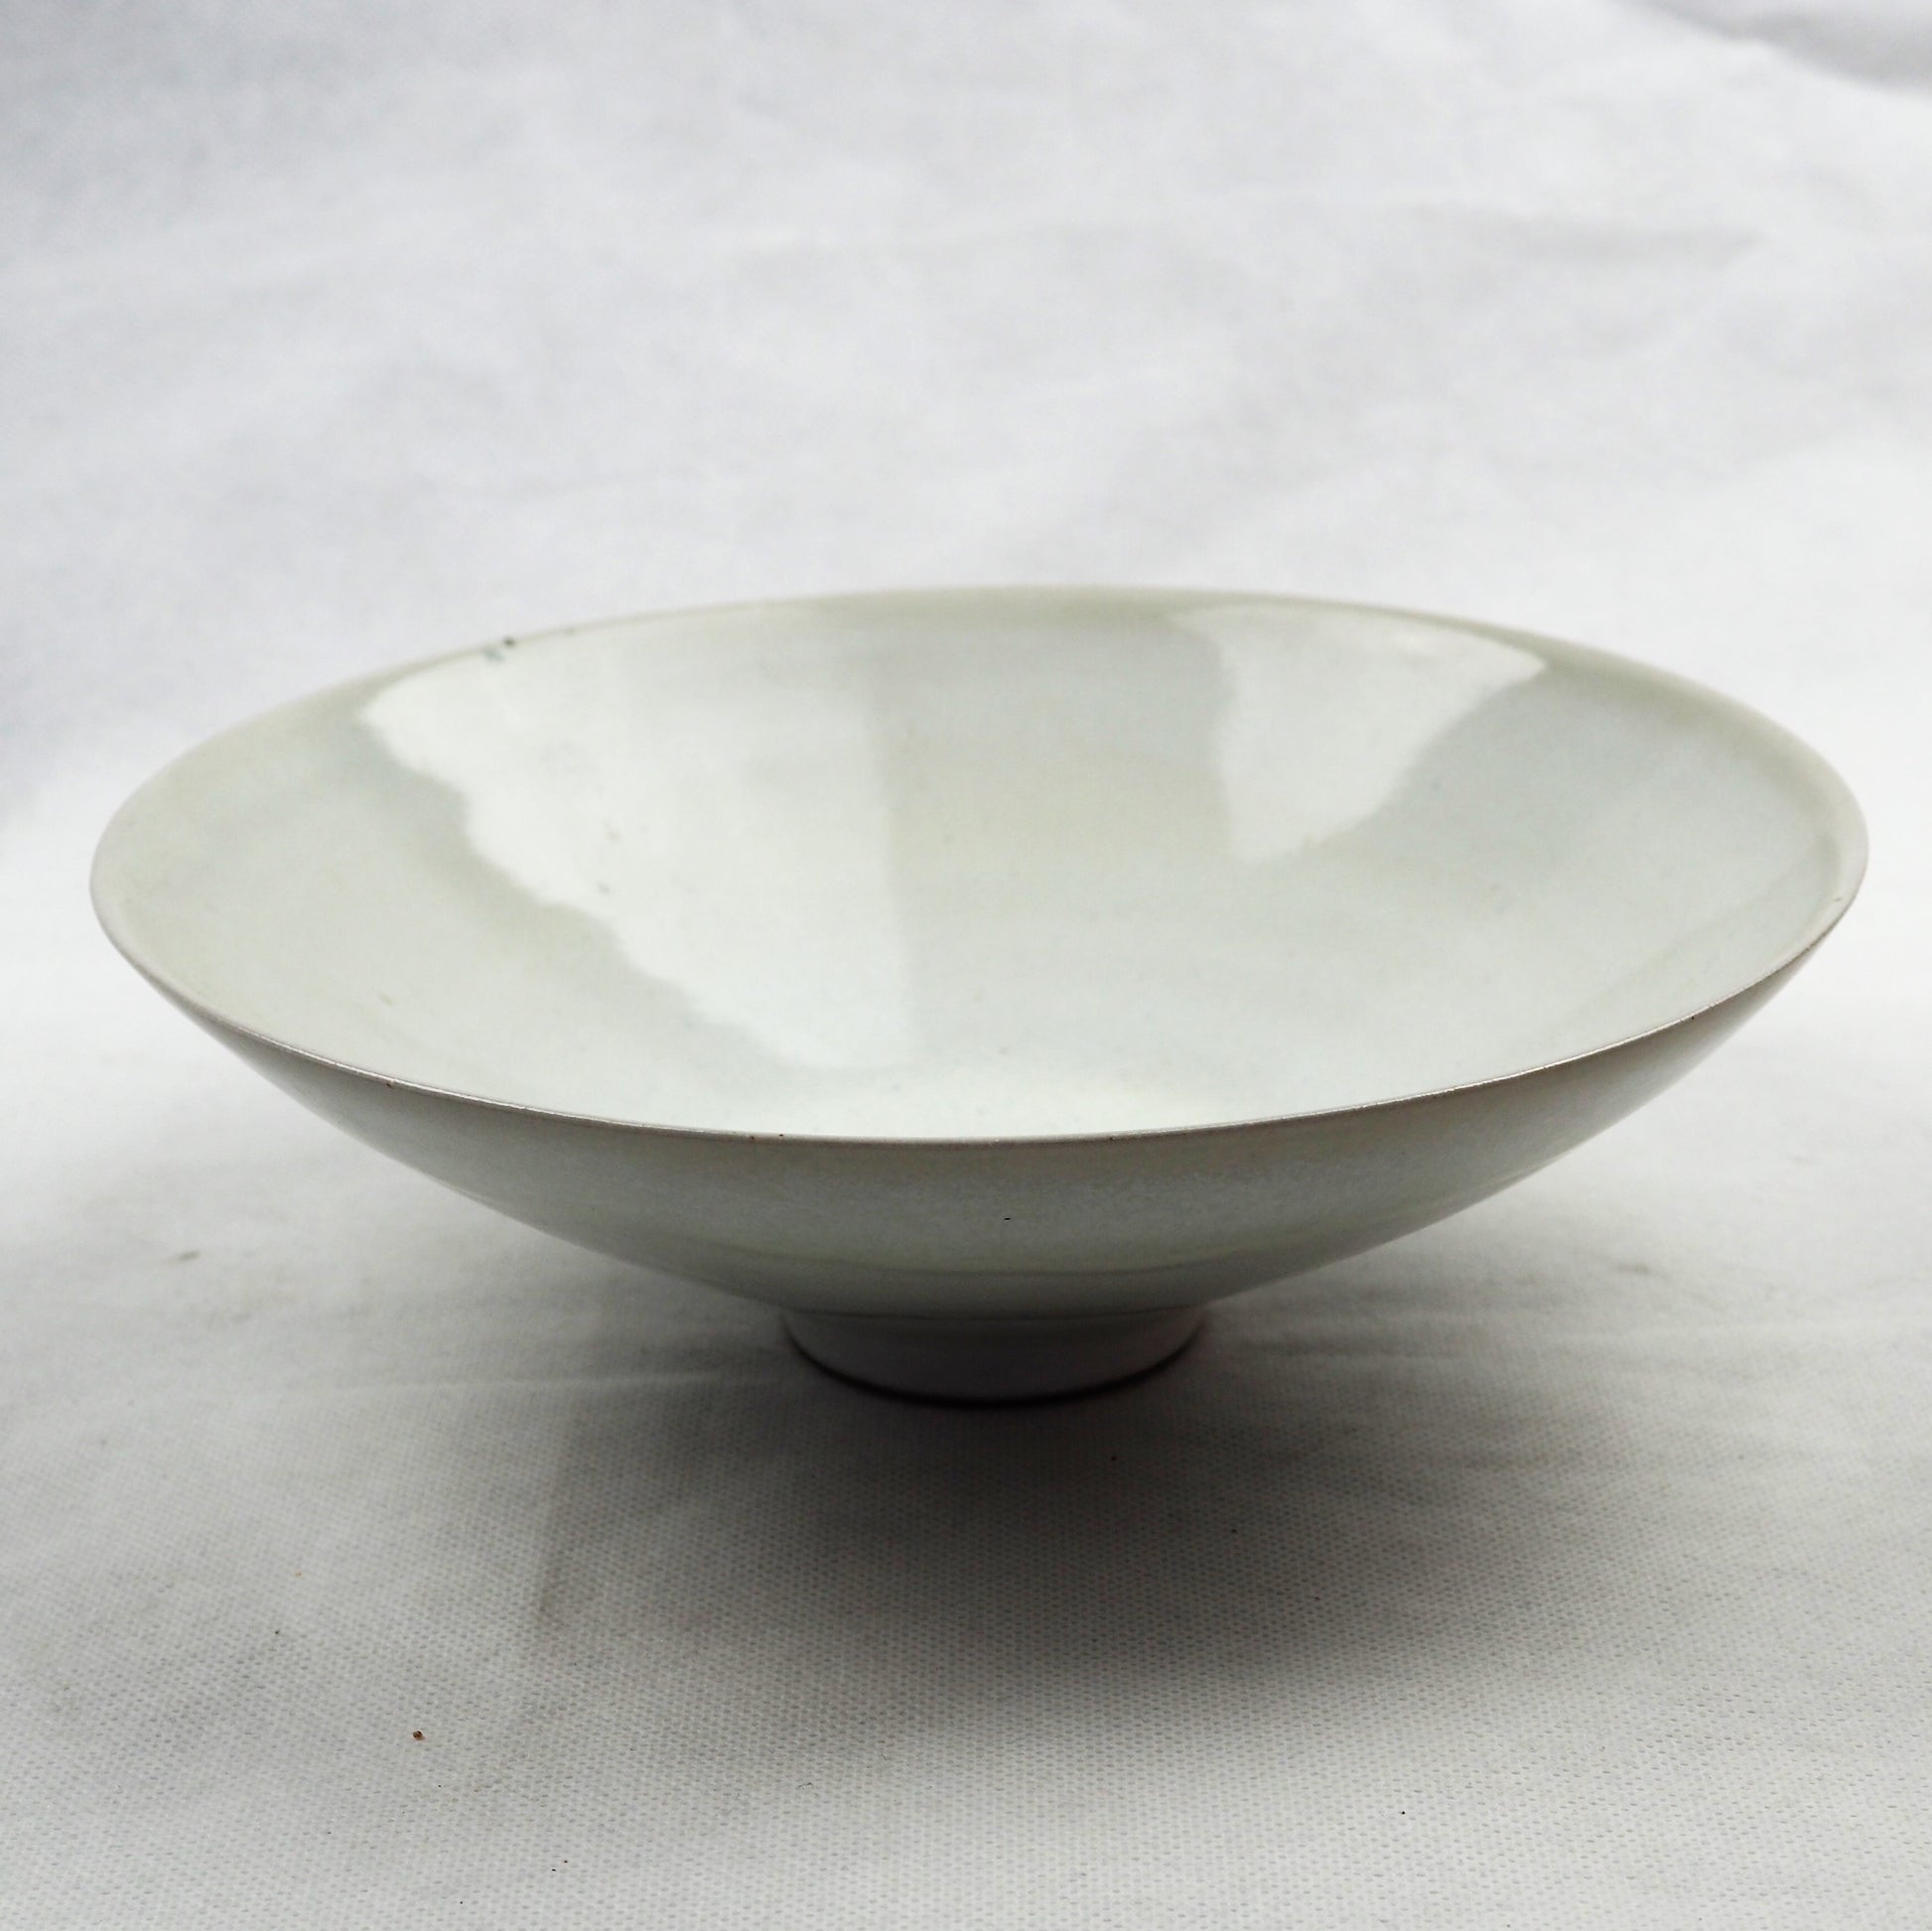 Spira, Rupert – Earthenware Bowl | Rupert Spira | Primavera Gallery